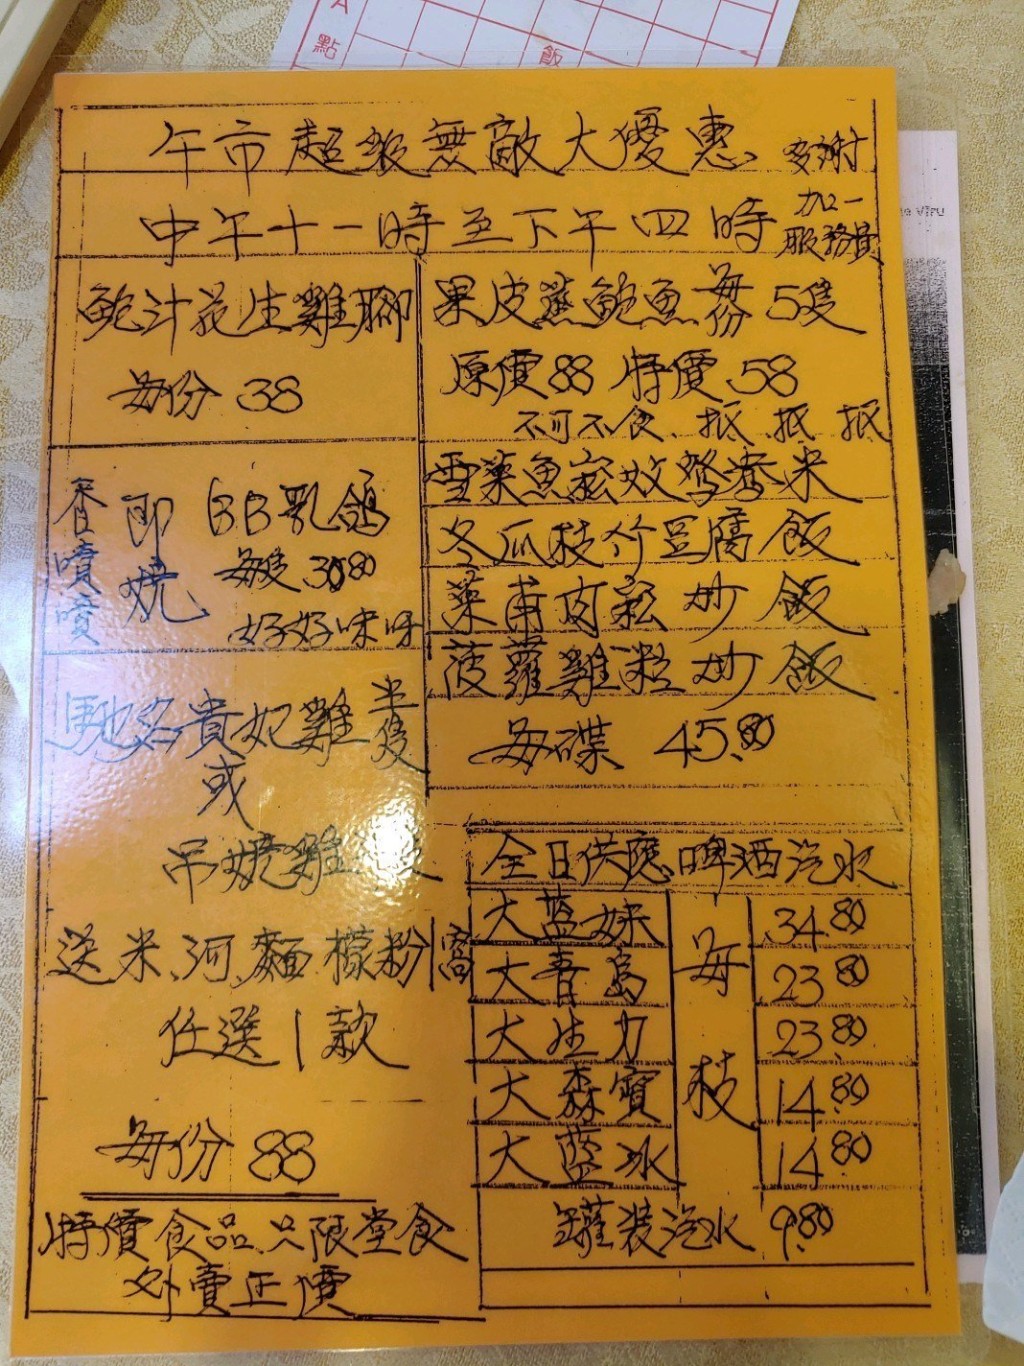 字體剛勁的手寫餐牌是酒樓一大特色。網民andyc1209圖片